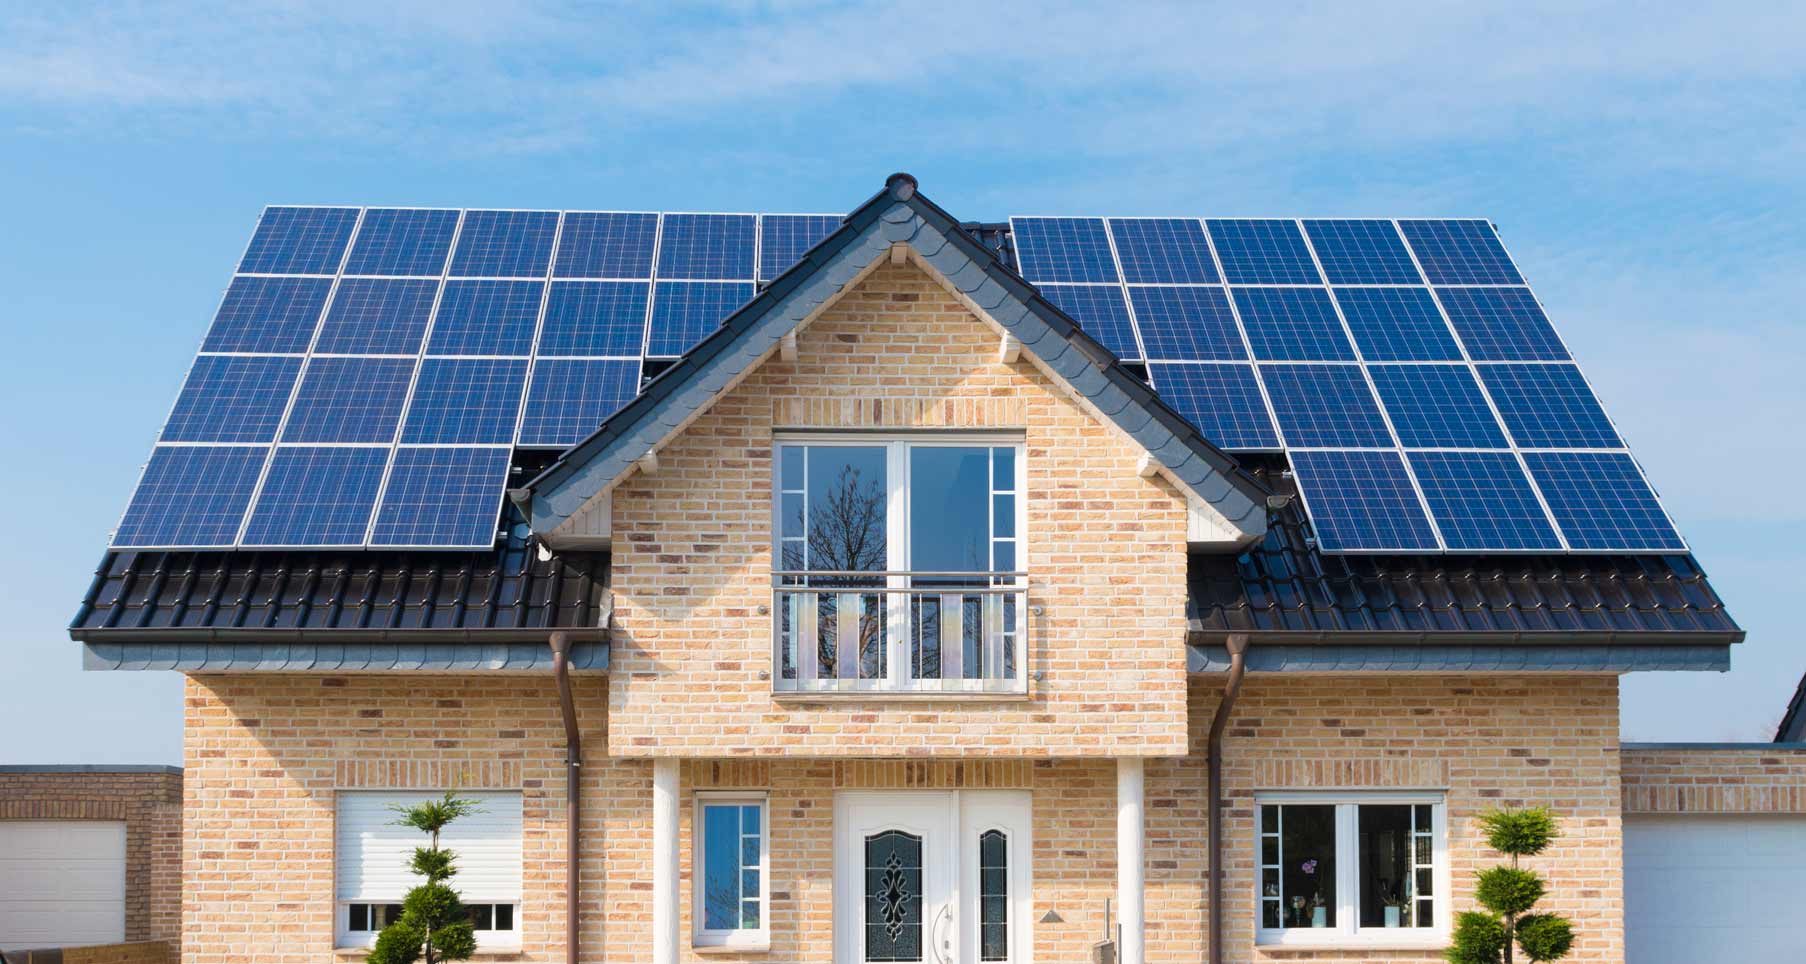 Energia Solar, painéis fotovoltaicos instalados em residência.